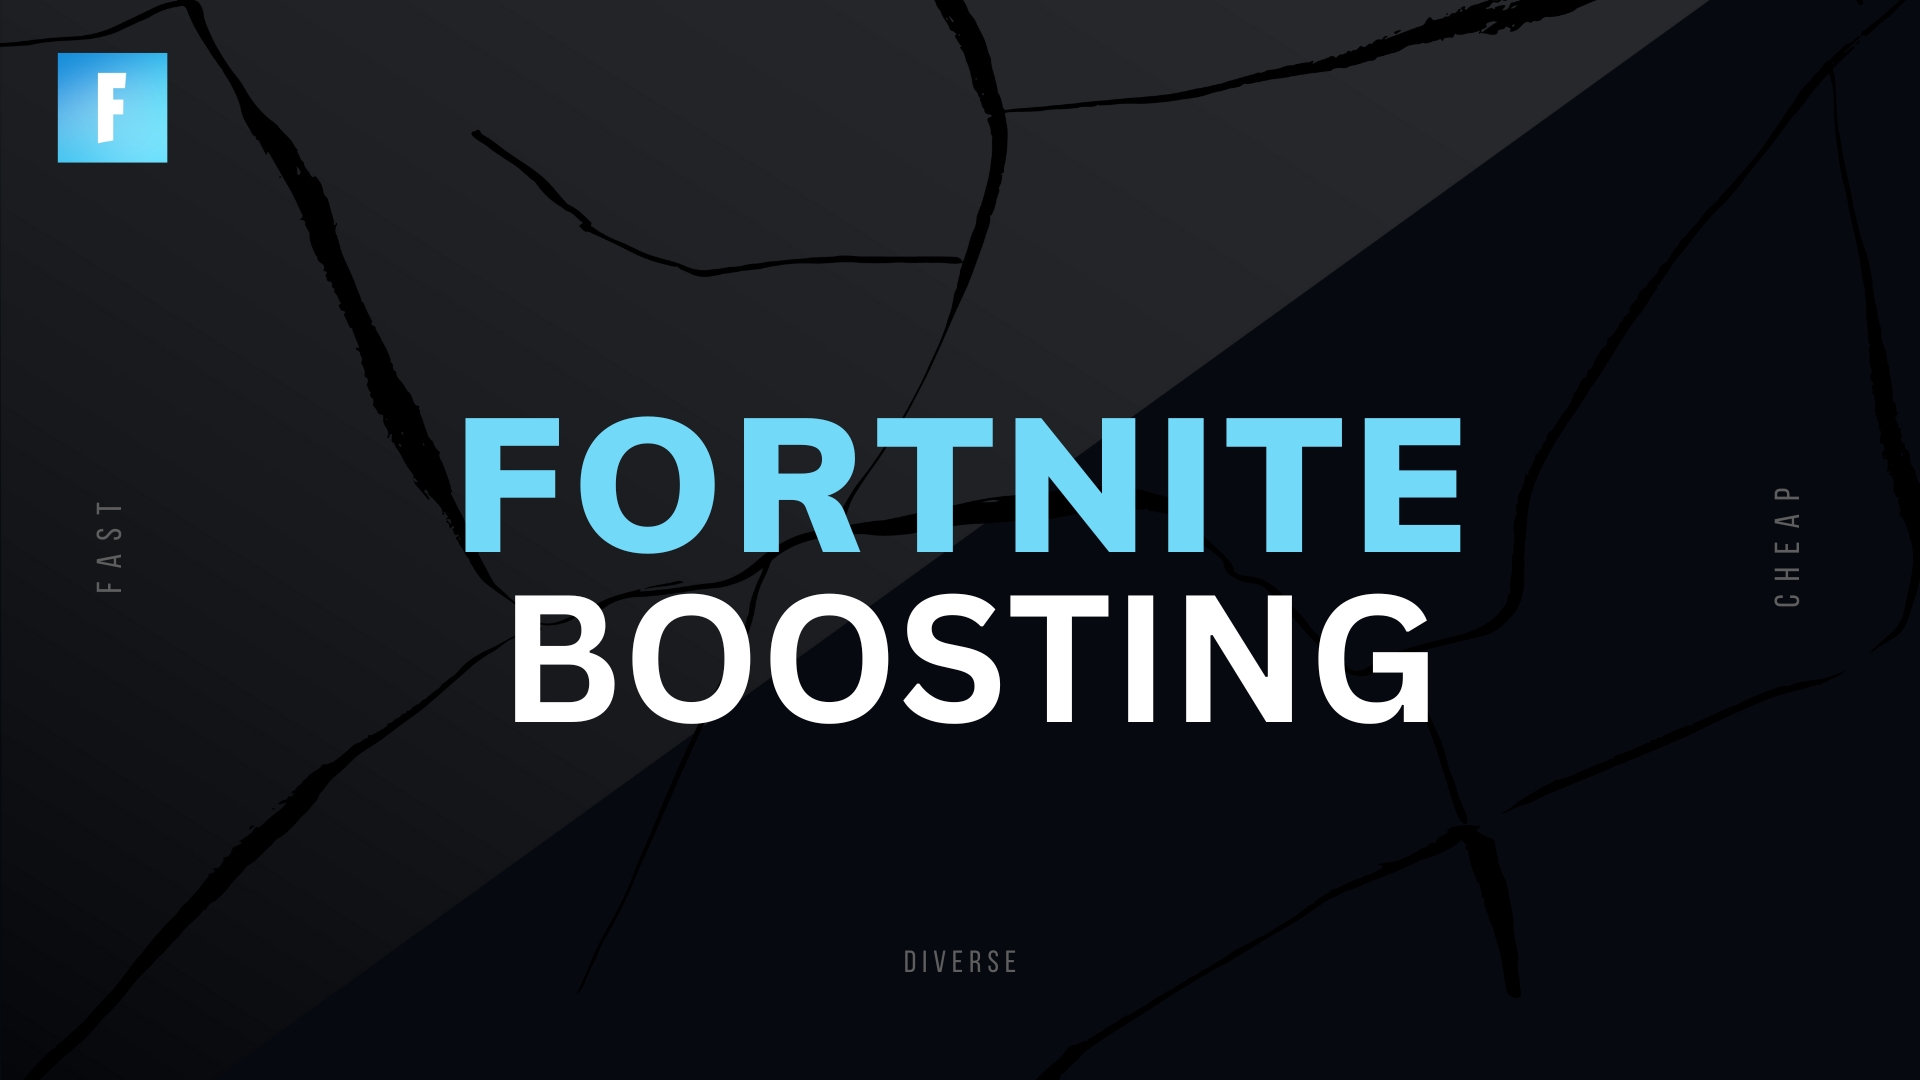 Fortnite Boosting